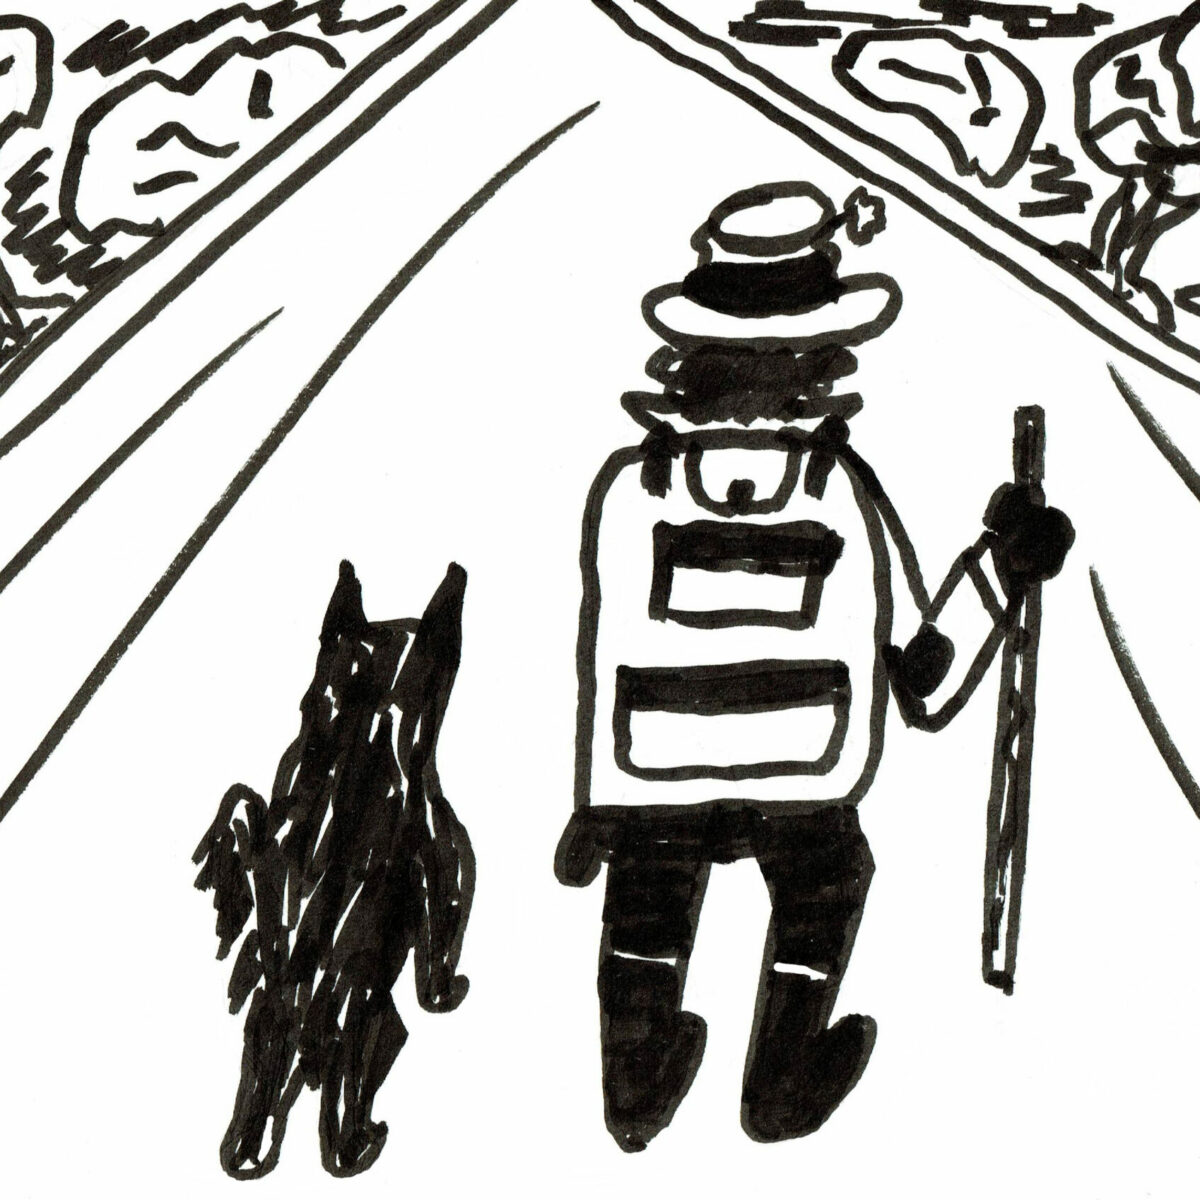 Zwei Freunde - ein Hund und ein Mann auf einer Landstraße